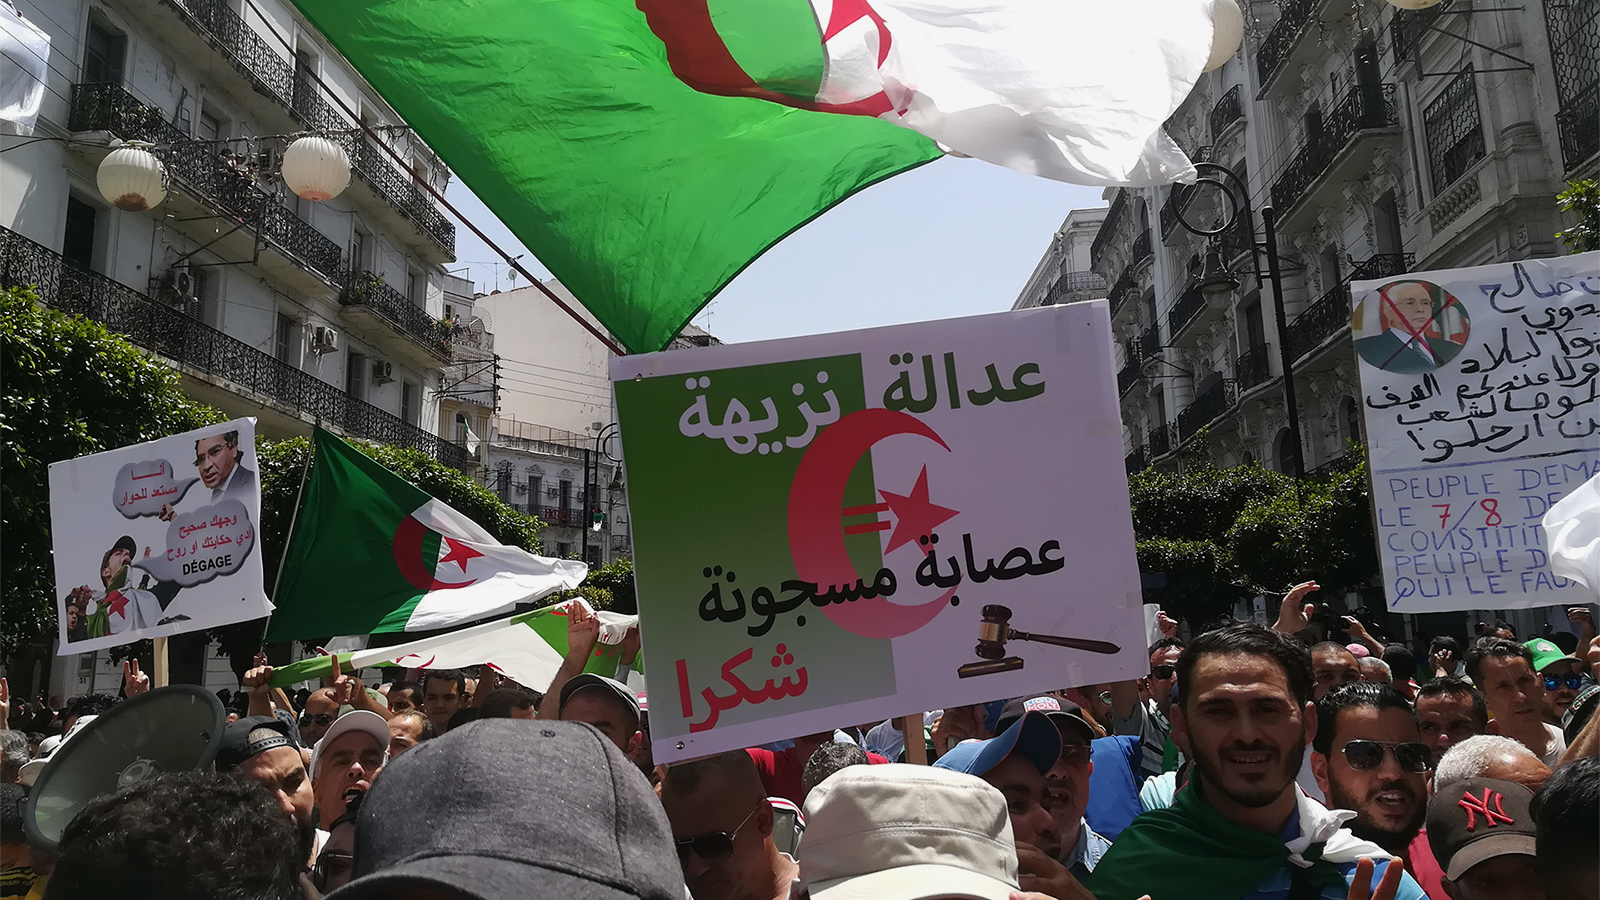 ‪متظاهرون في قلب العاصمة الجزائر يصرون على تطبيق العدالة لمحاربة الفساد‬ (الجزيرة)